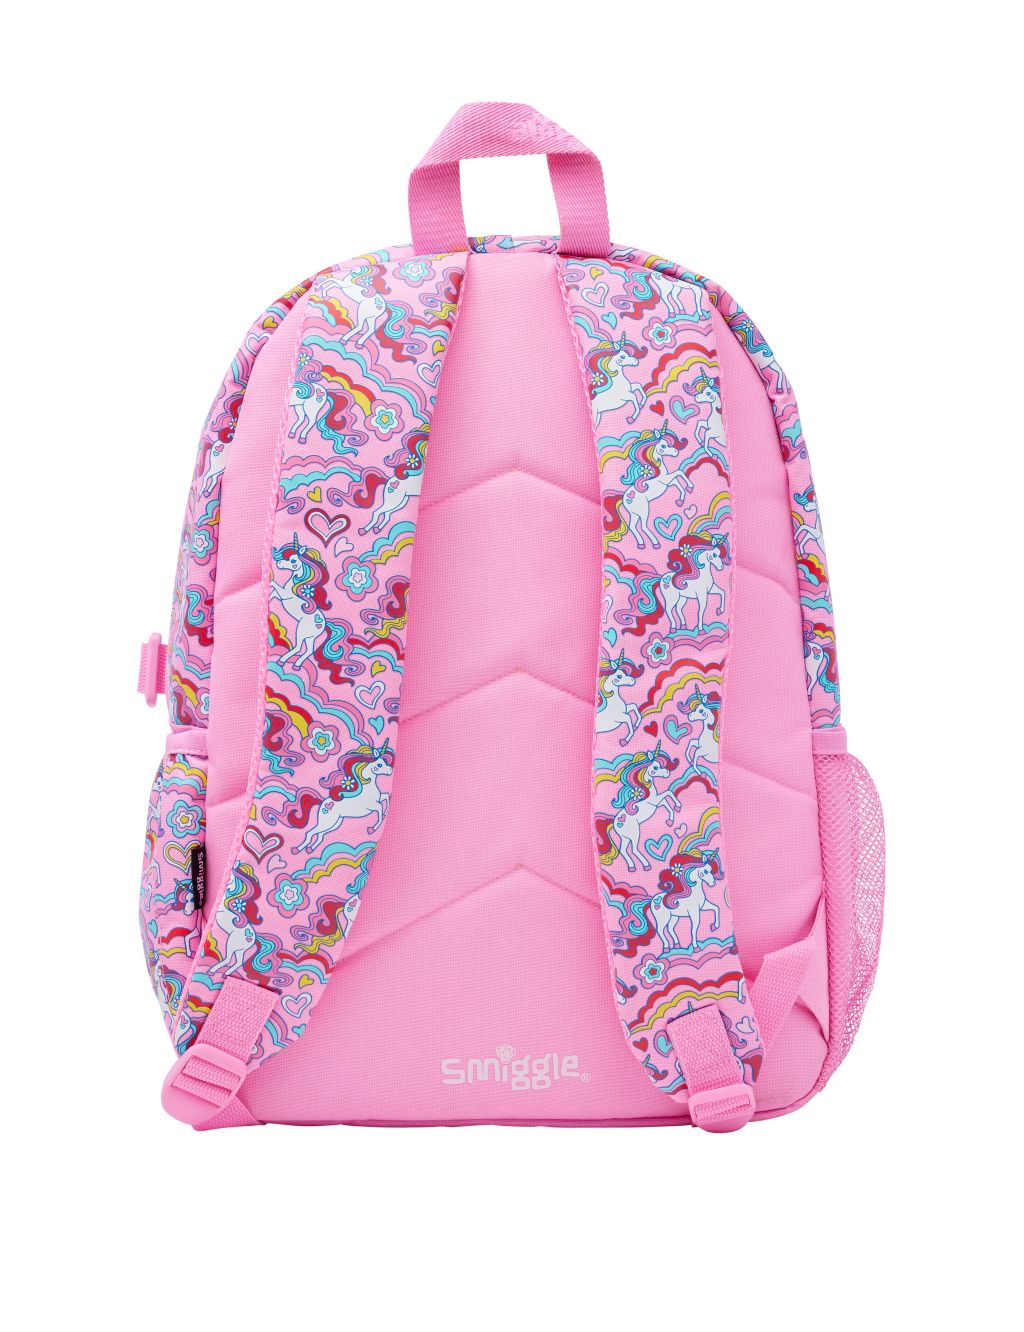 Kids' Patterned Backpack (3+ Yrs) image 3